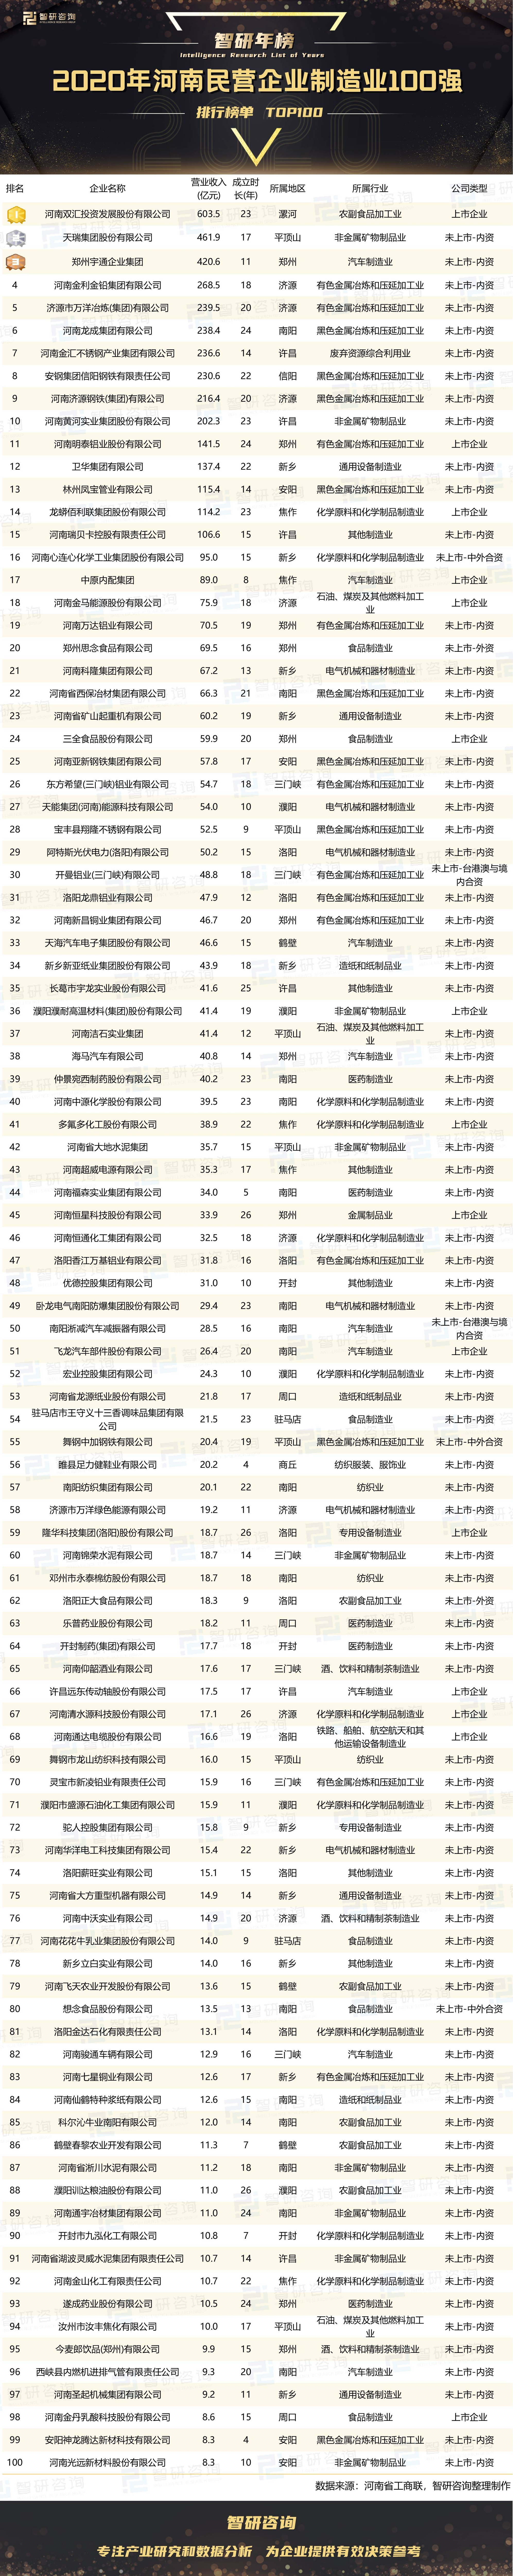 制造企业排行_2020年河南民营企业制造业100强排行榜:1家上市企业位居榜单榜首